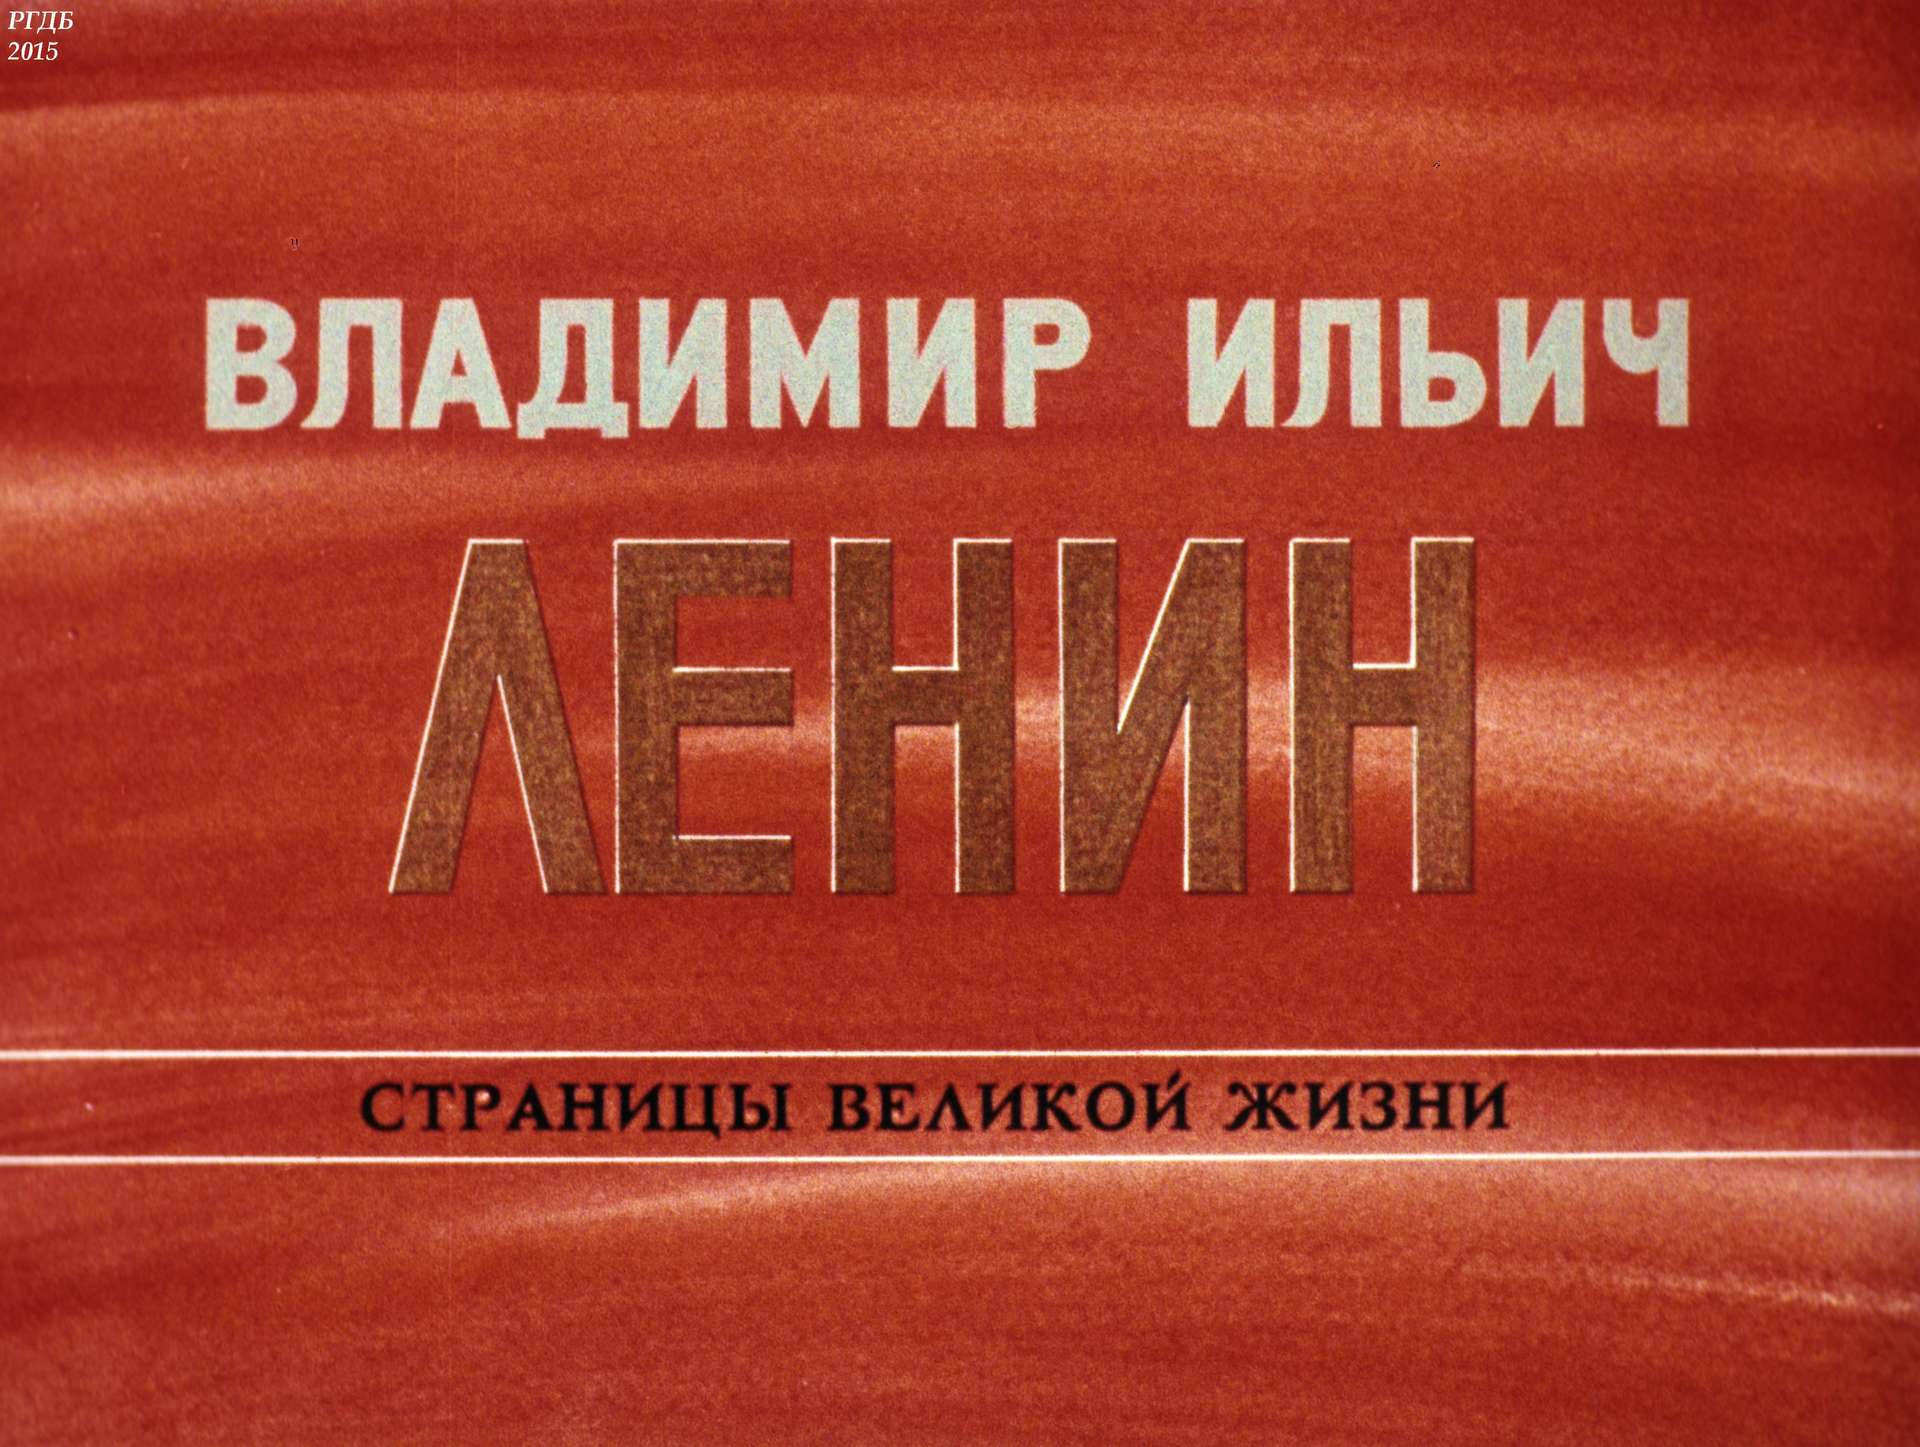 Владимир Ильич Ленин: страницы великой жизни. Ч. 3: В сибирской ссылке (1897-1900)